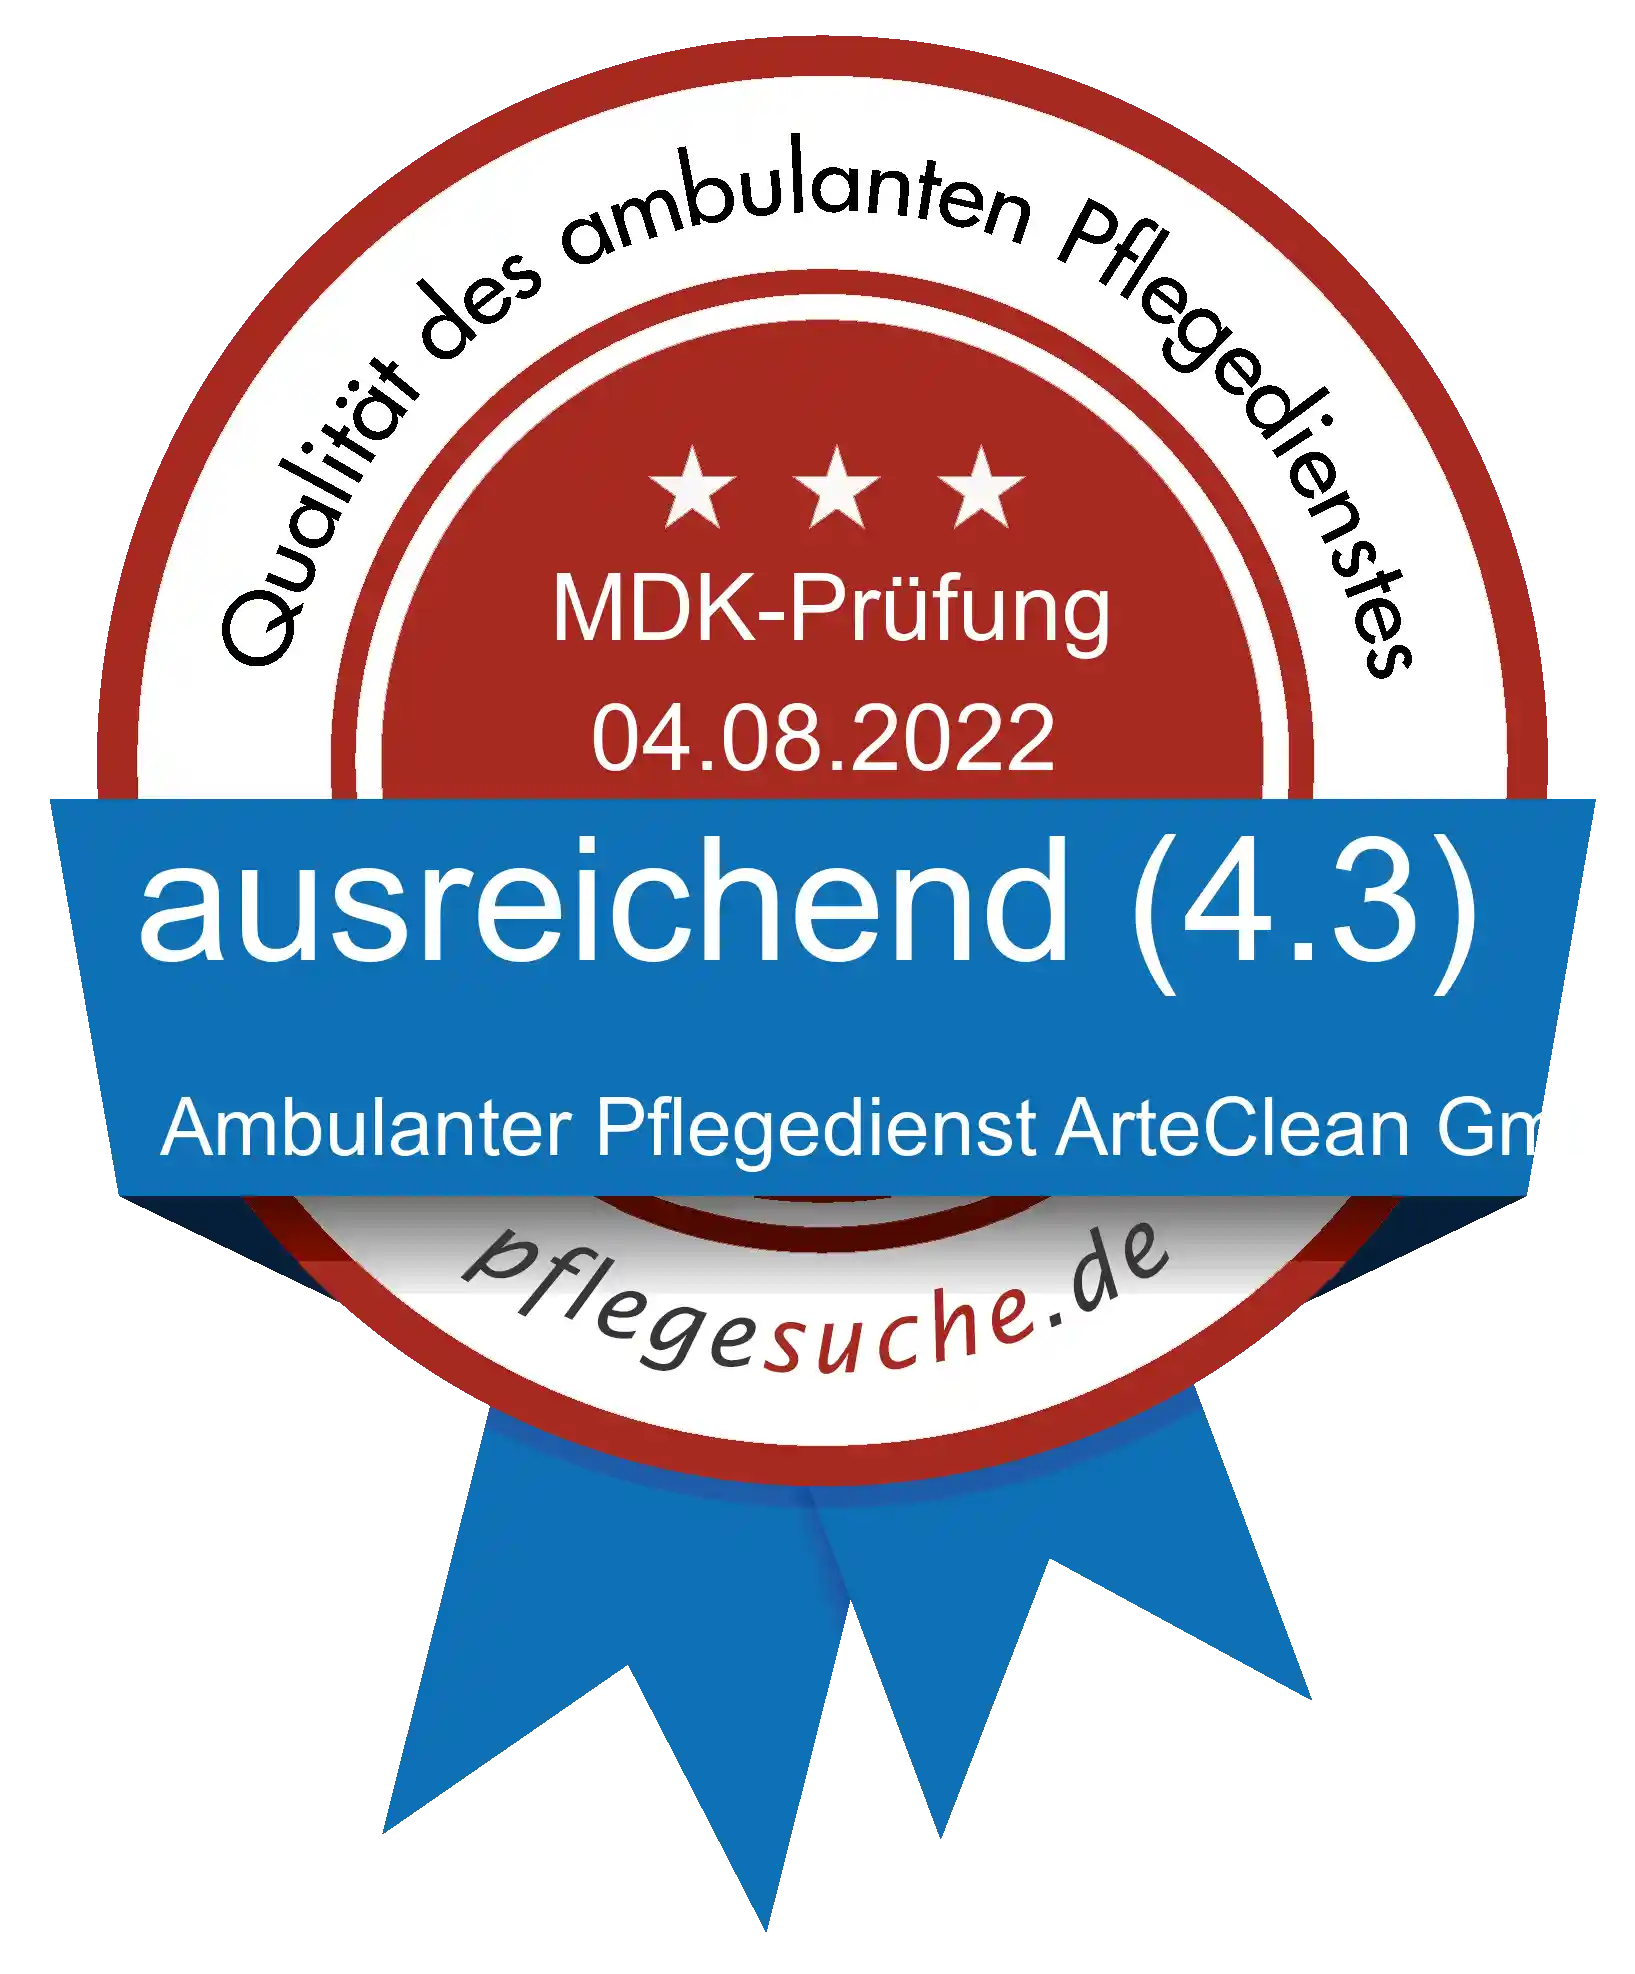 Siegel Benotung: Ambulanter Pflegedienst ArteClean GmbH